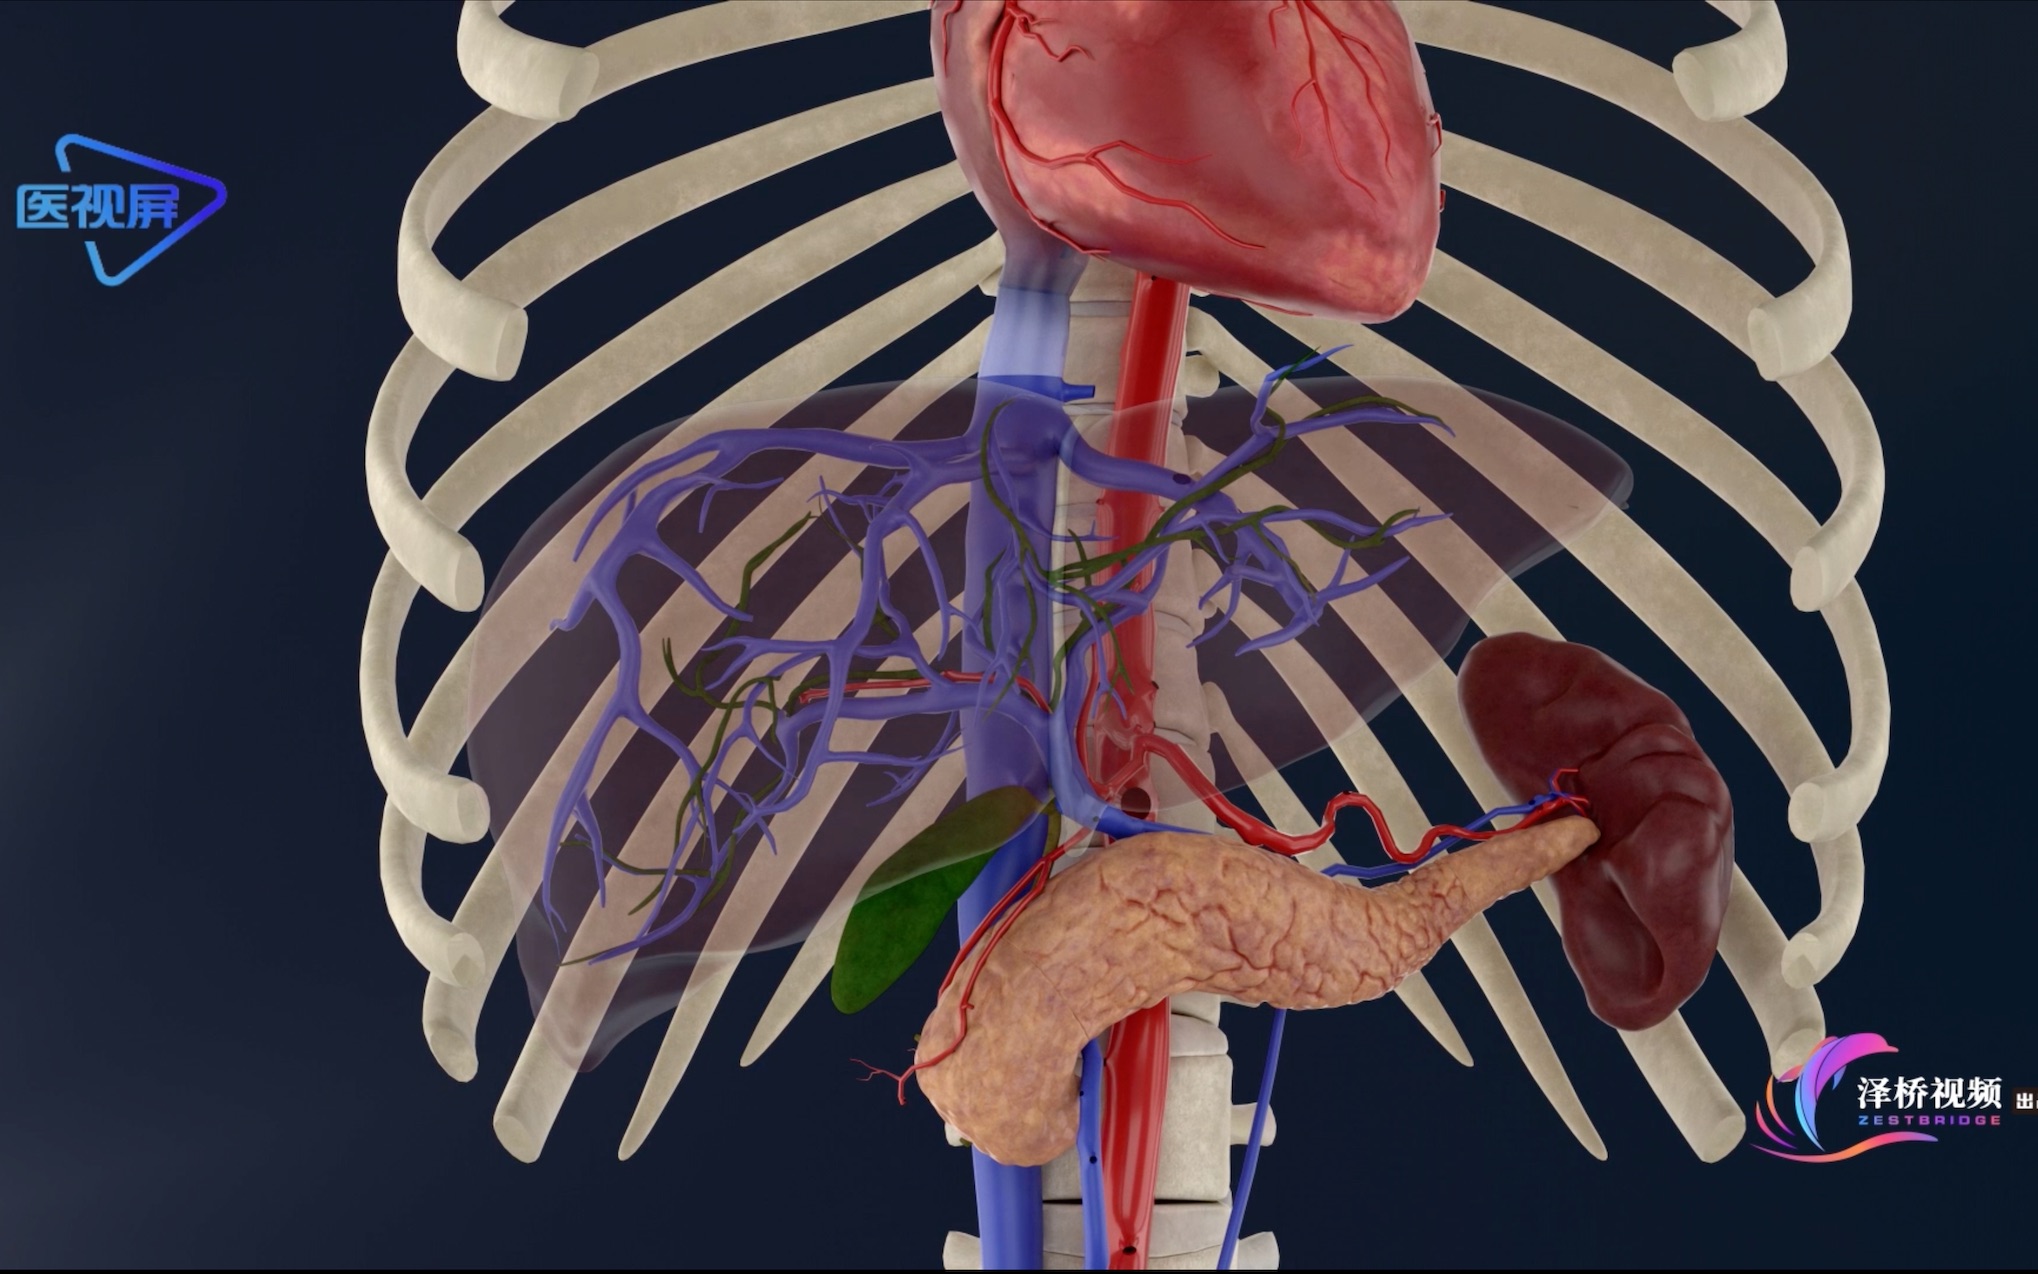 肝脏解剖位置 人体图片